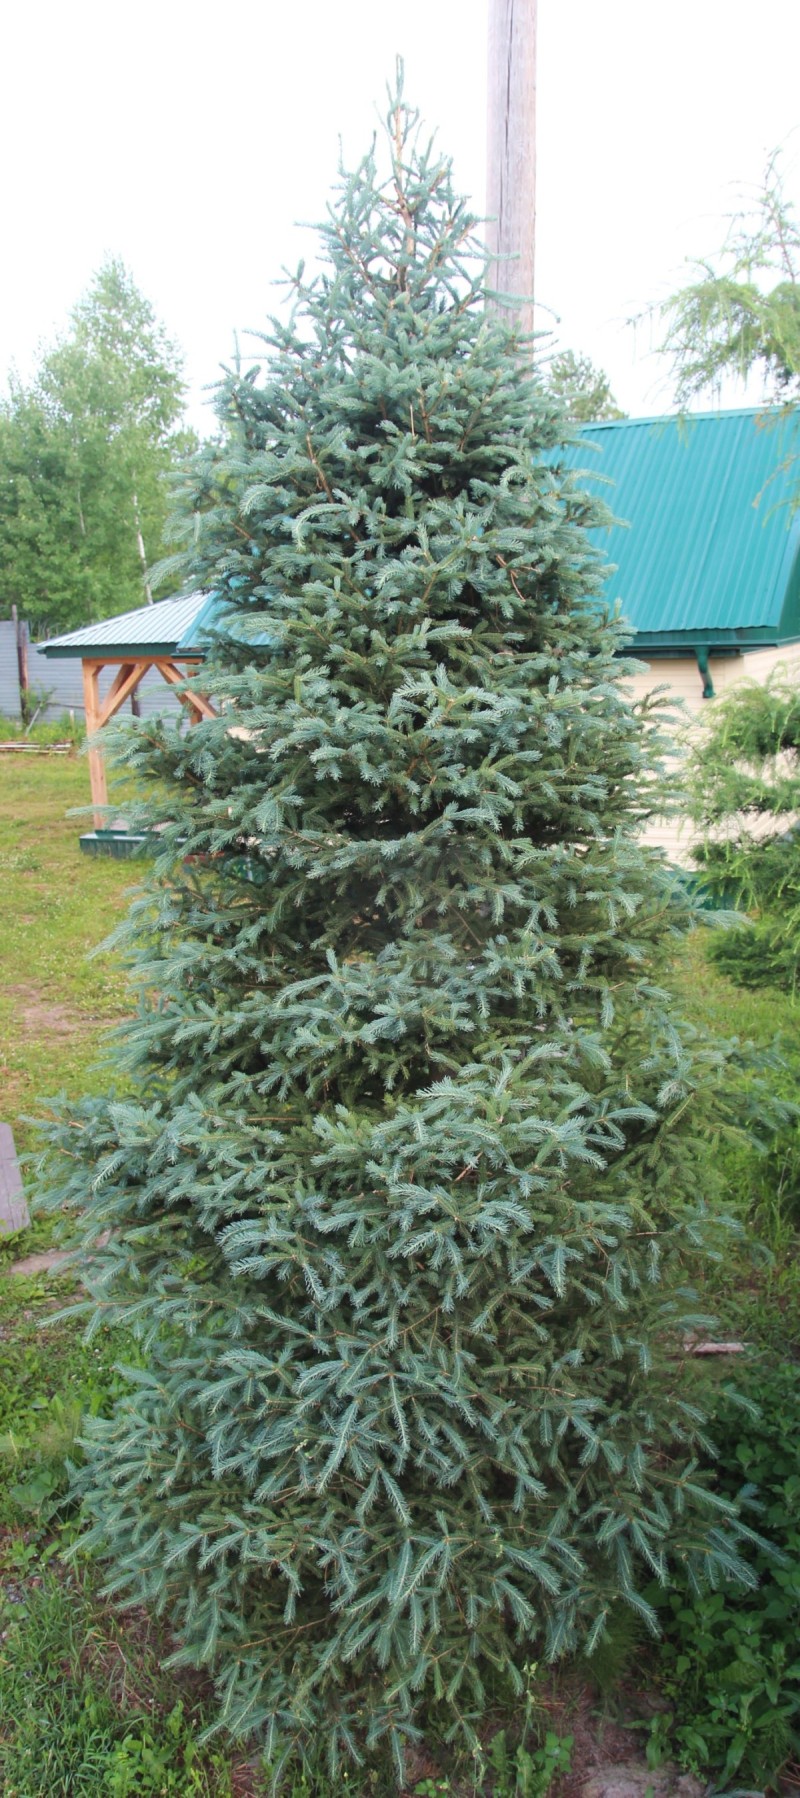 Picea glauca, ель канадская. 2005 года рождения. Это экологический аналог ели сибирской. Поэтому живет у нас отлично. Высоко декоративна, особенно если подстрижена умелыми руками. Уникальный крупномер. Приезжайте, выбирайте